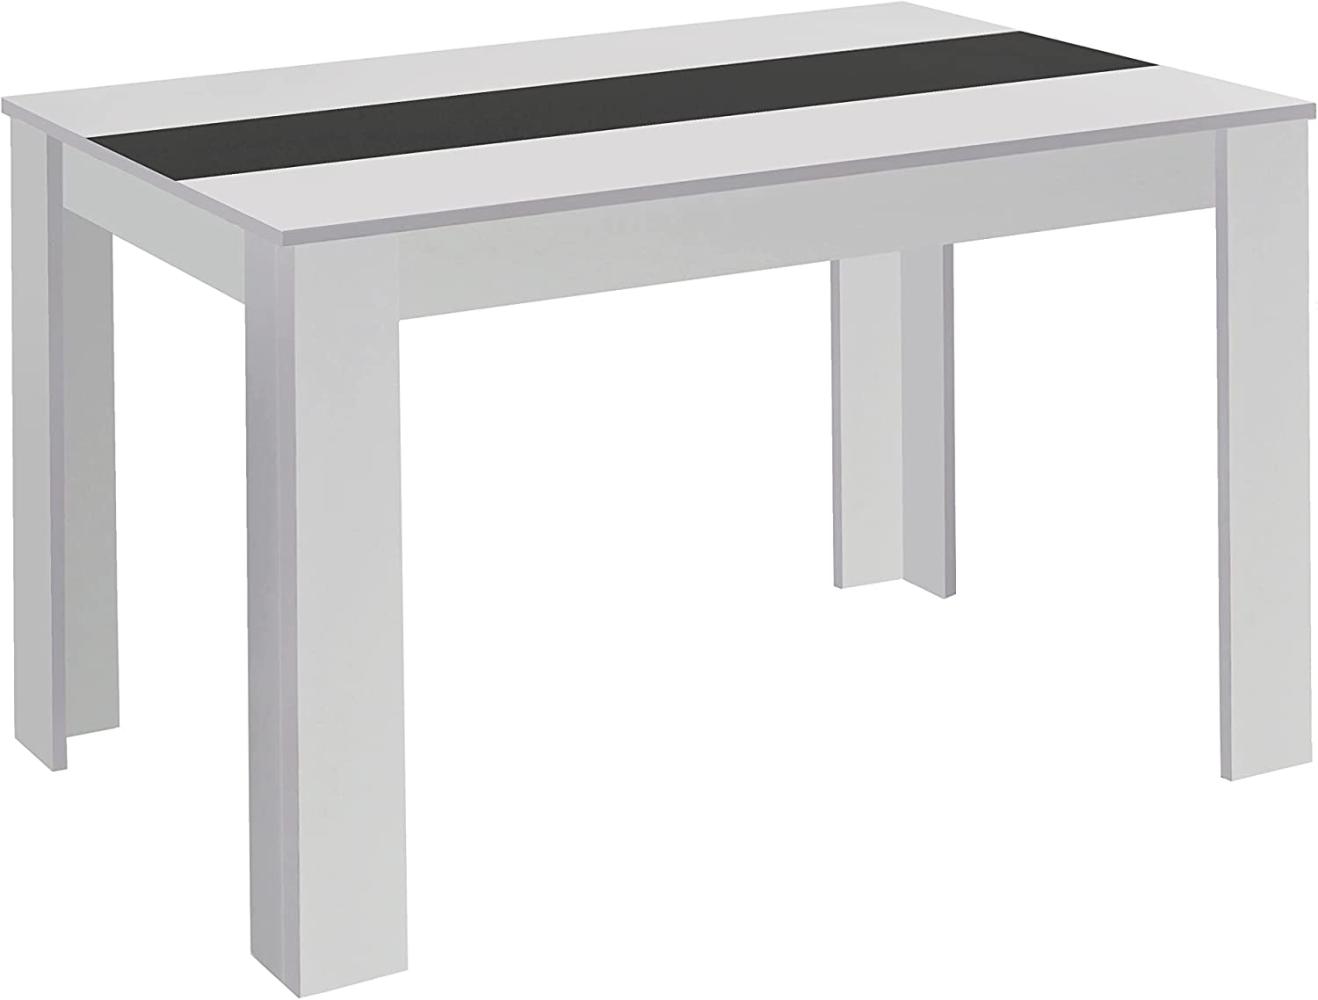 byLIVING Esstisch Nori / Moderner Küchentisch in Weiß / Einlegeplatte wendbar in schwarz oder weiß / Goßer Tisch / 160 x 90, H 75 cm Bild 1